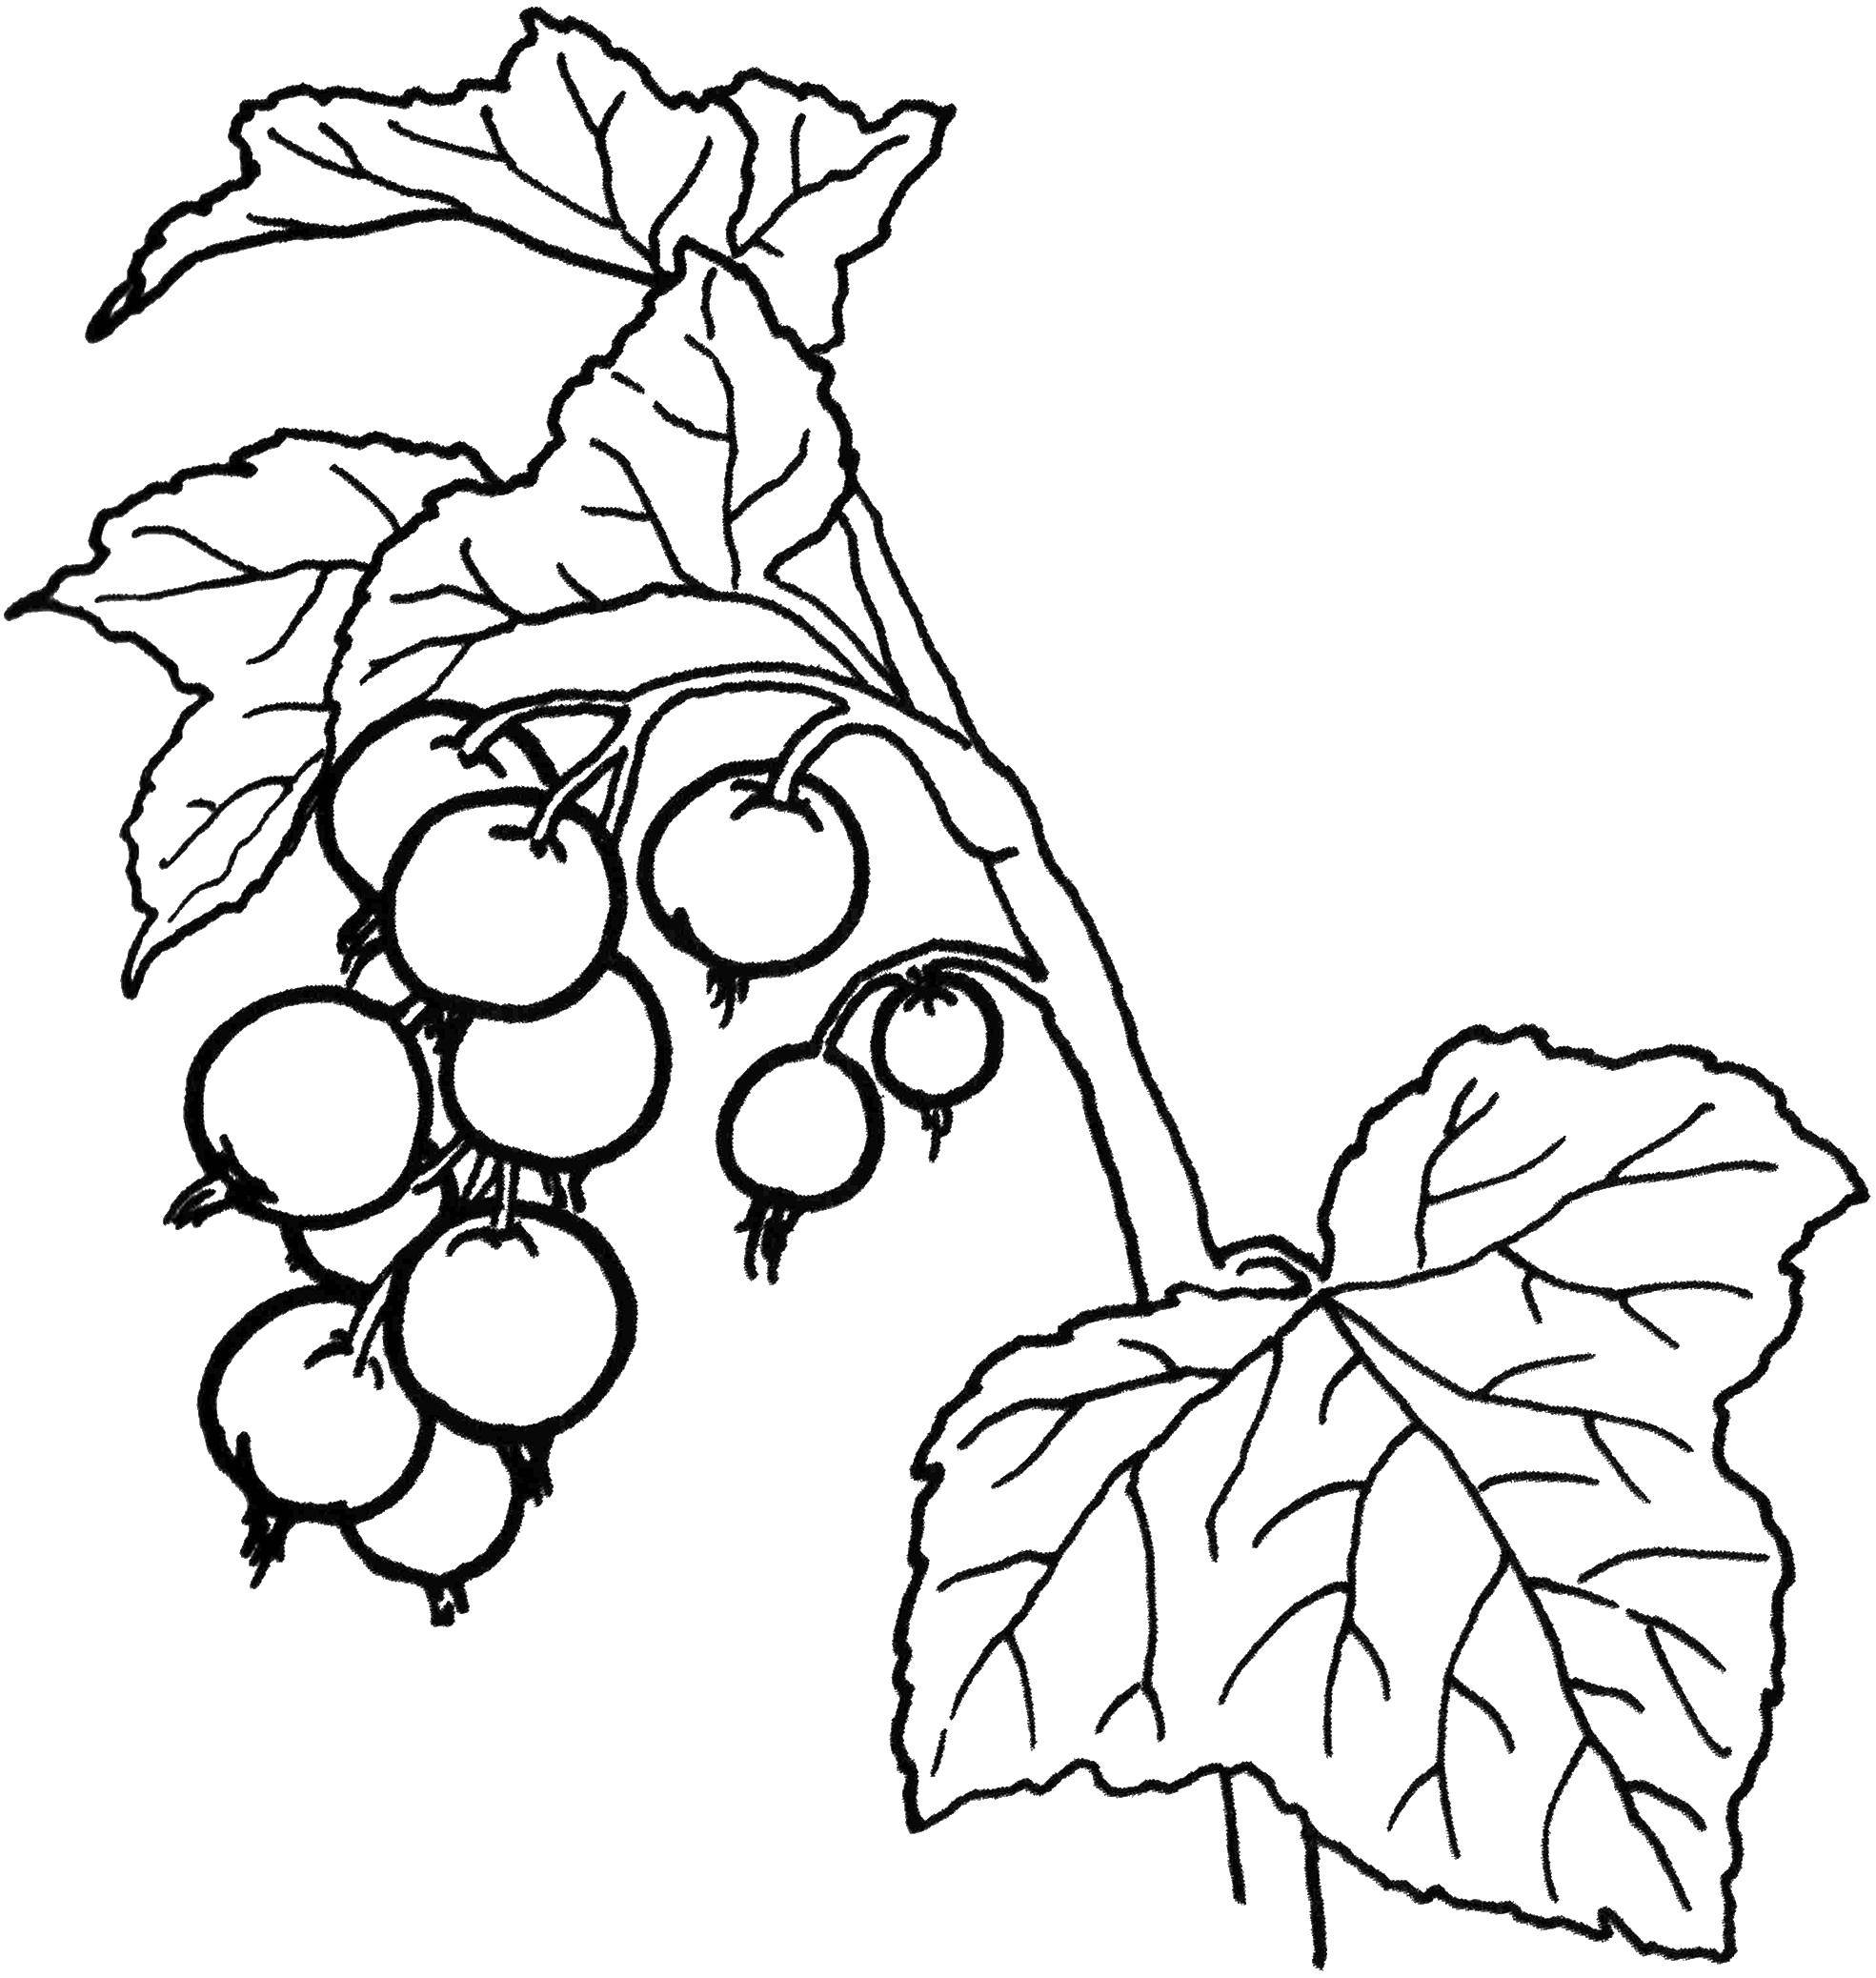 Раскраски ягоды малина вишня арбуз вишня крыжовник  Смородина